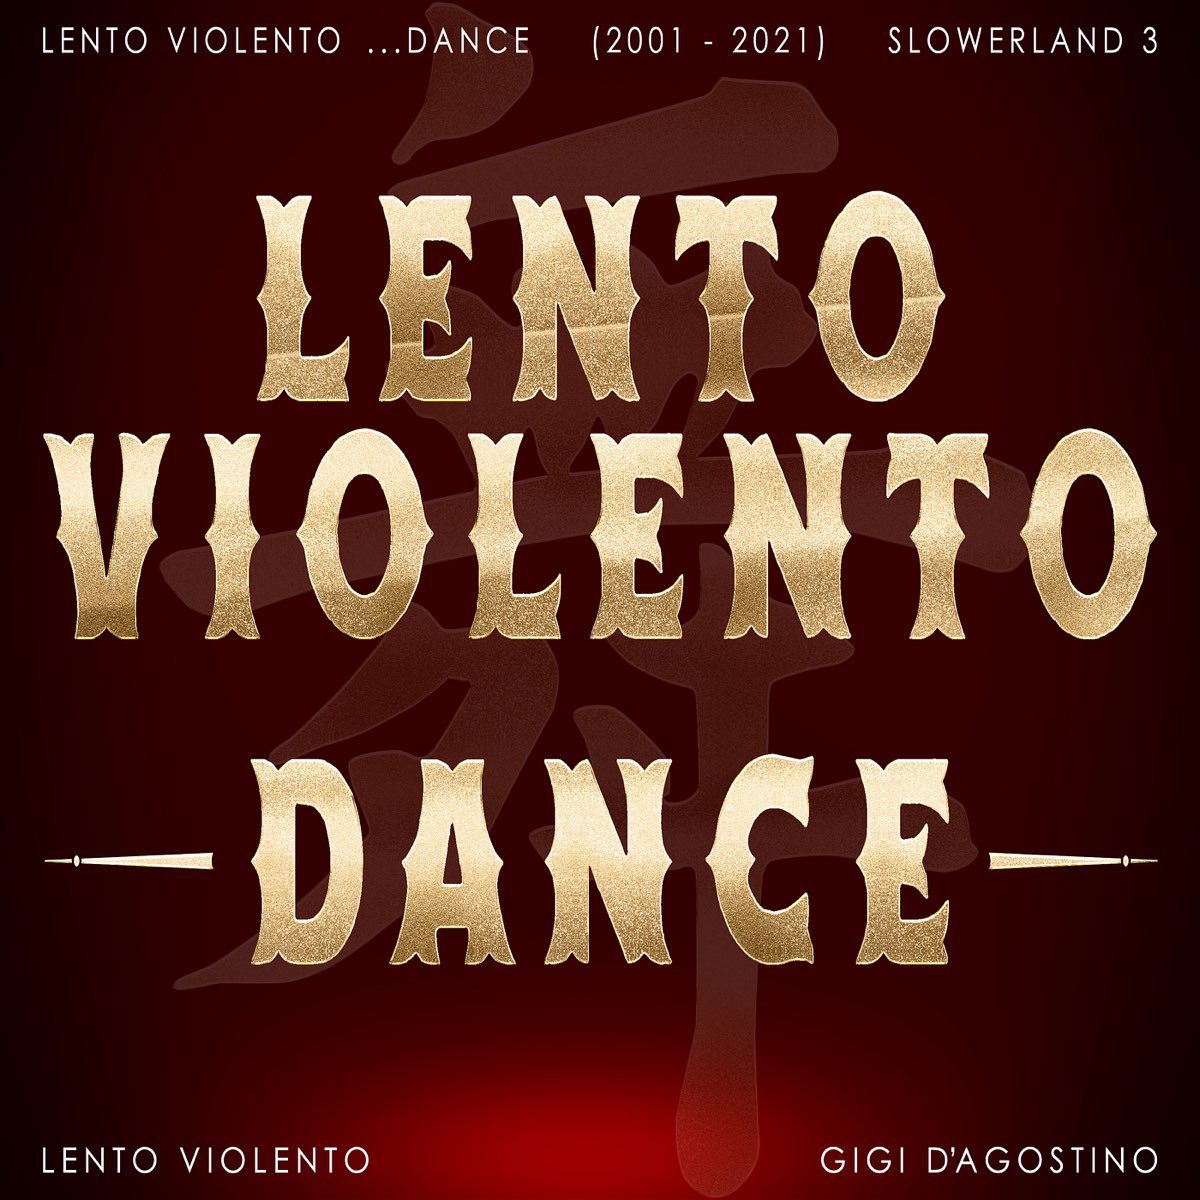 Lento Violento Dance (2001 - 2021) Slowerland 3 - Album di Lento Violento &  Gigi D'Agostino - Apple Music